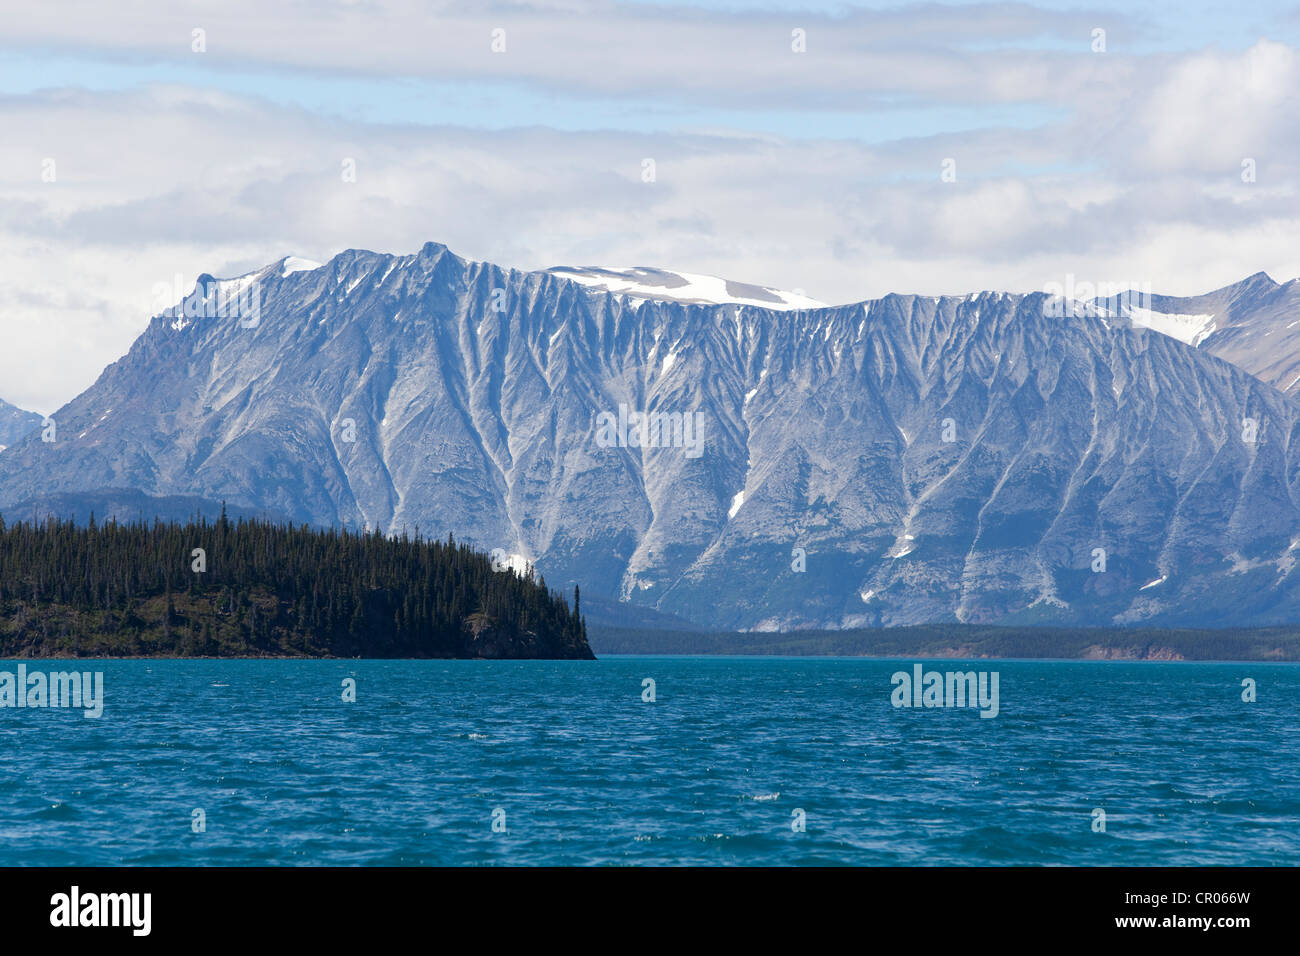 Atlin Lake, mountains behind, Tagish Highland, Mount Fetterly, British Columbia, Canada, America Stock Photo